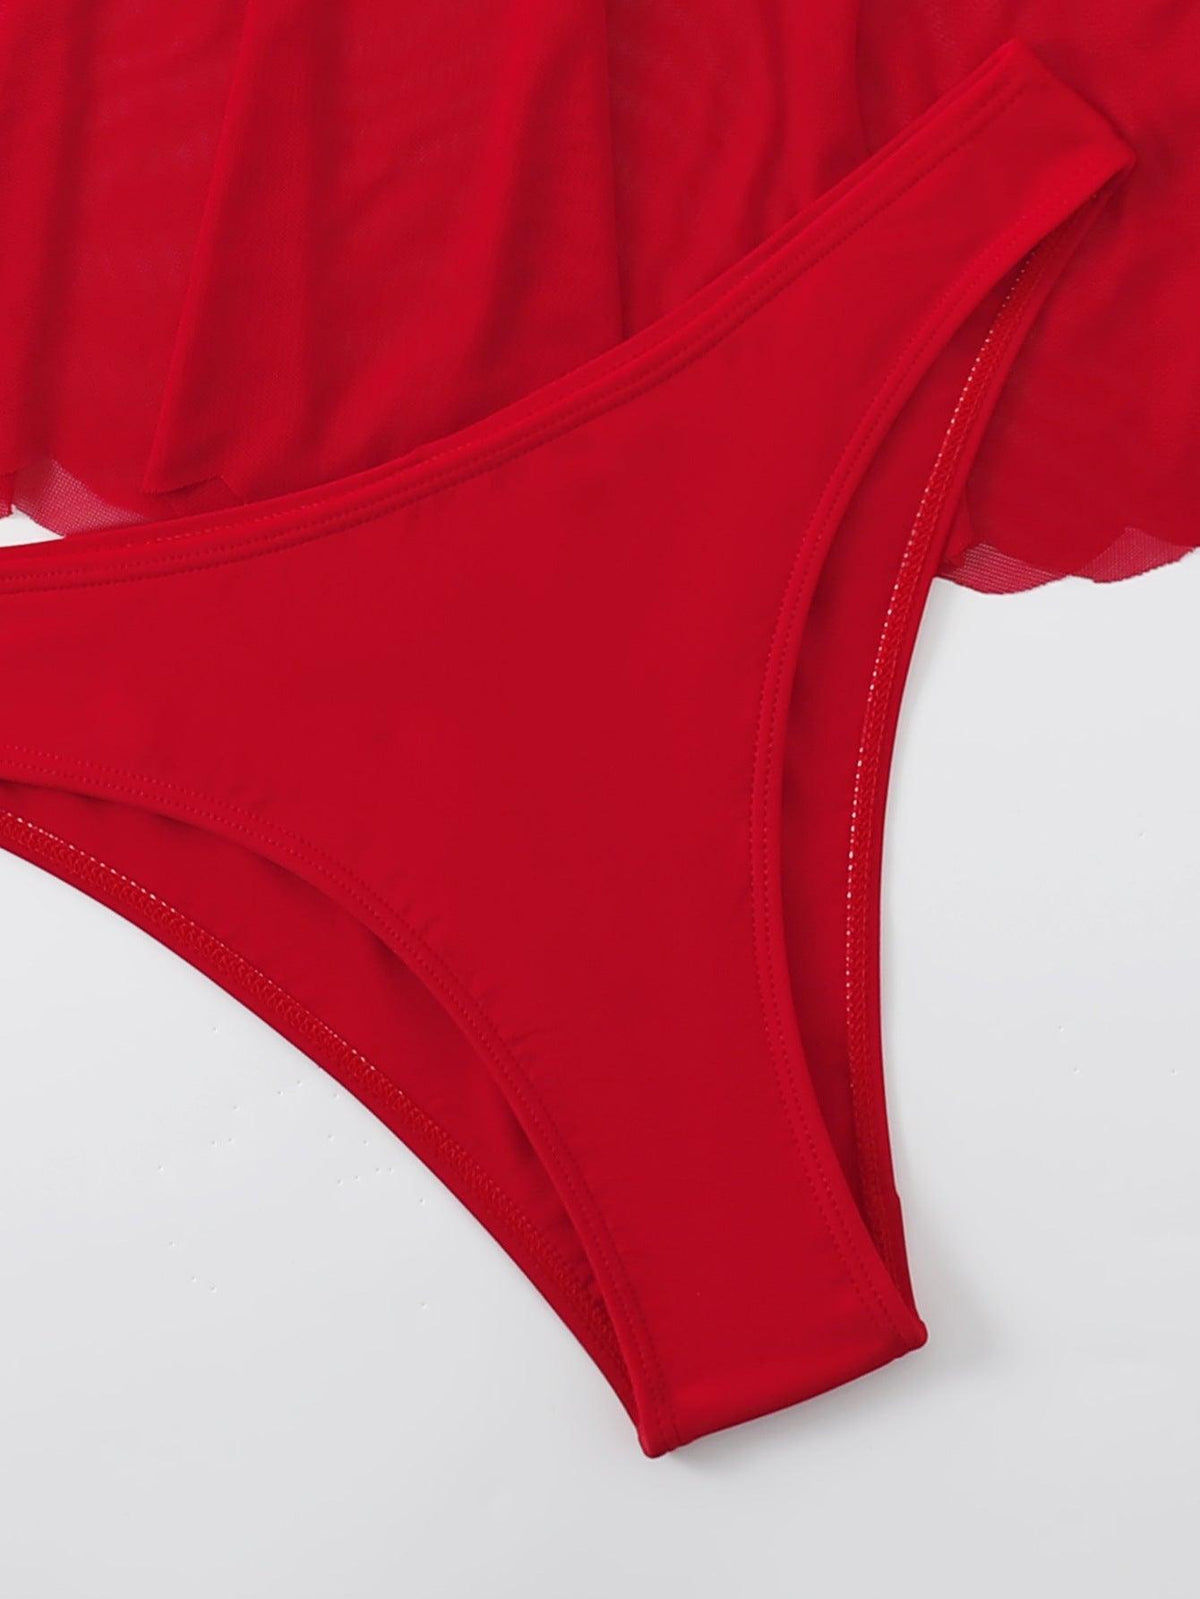 GFIT® New Sexy Little Skirt Bikinis Set - GFIT SPORTS